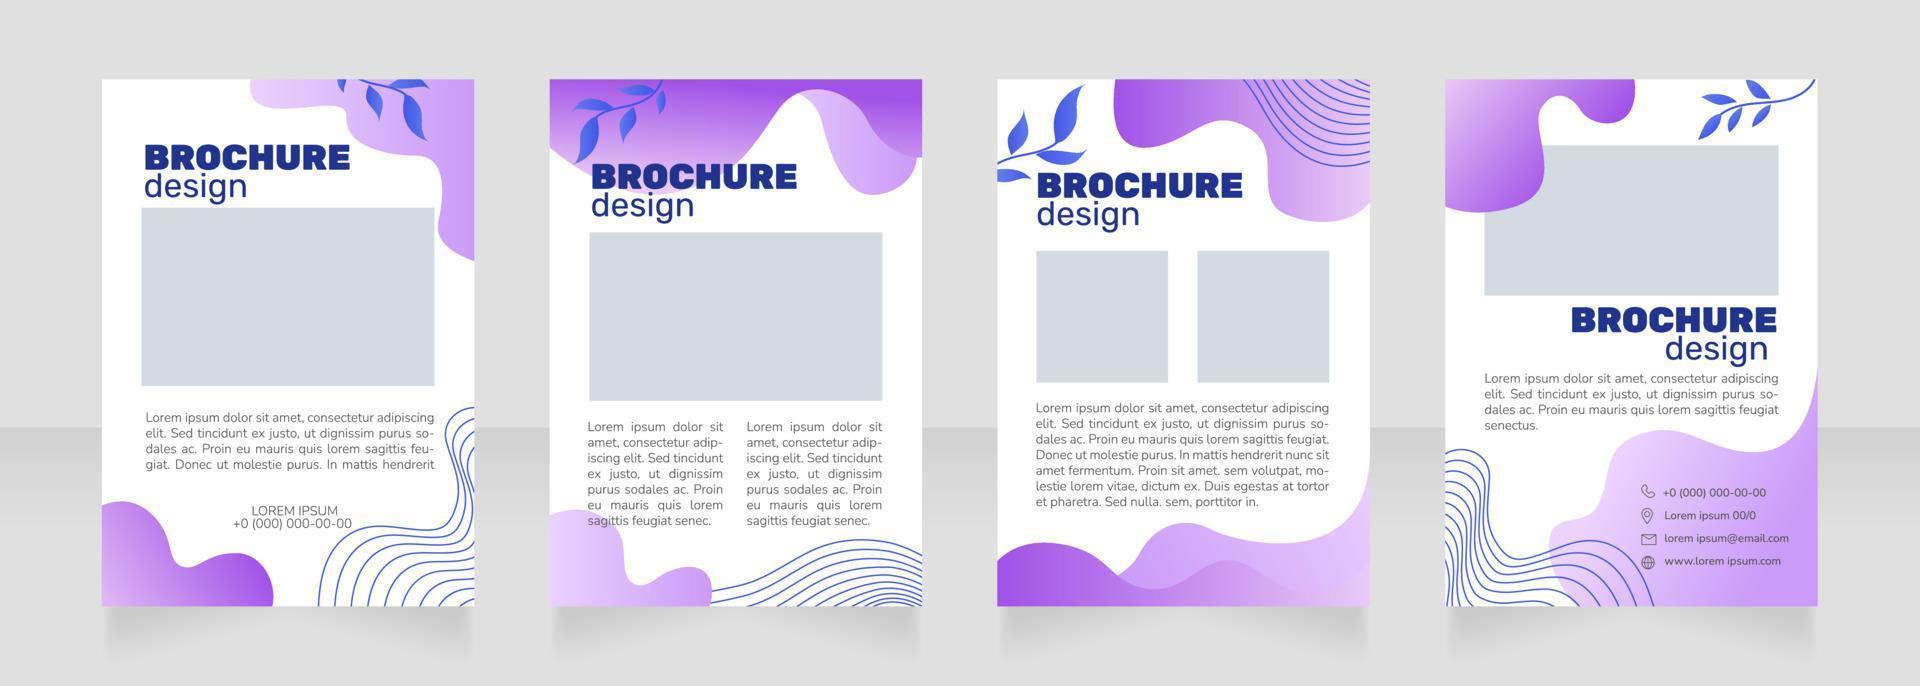 design di brochure in bianco promozionale di marca di cosmetici biologici vettore